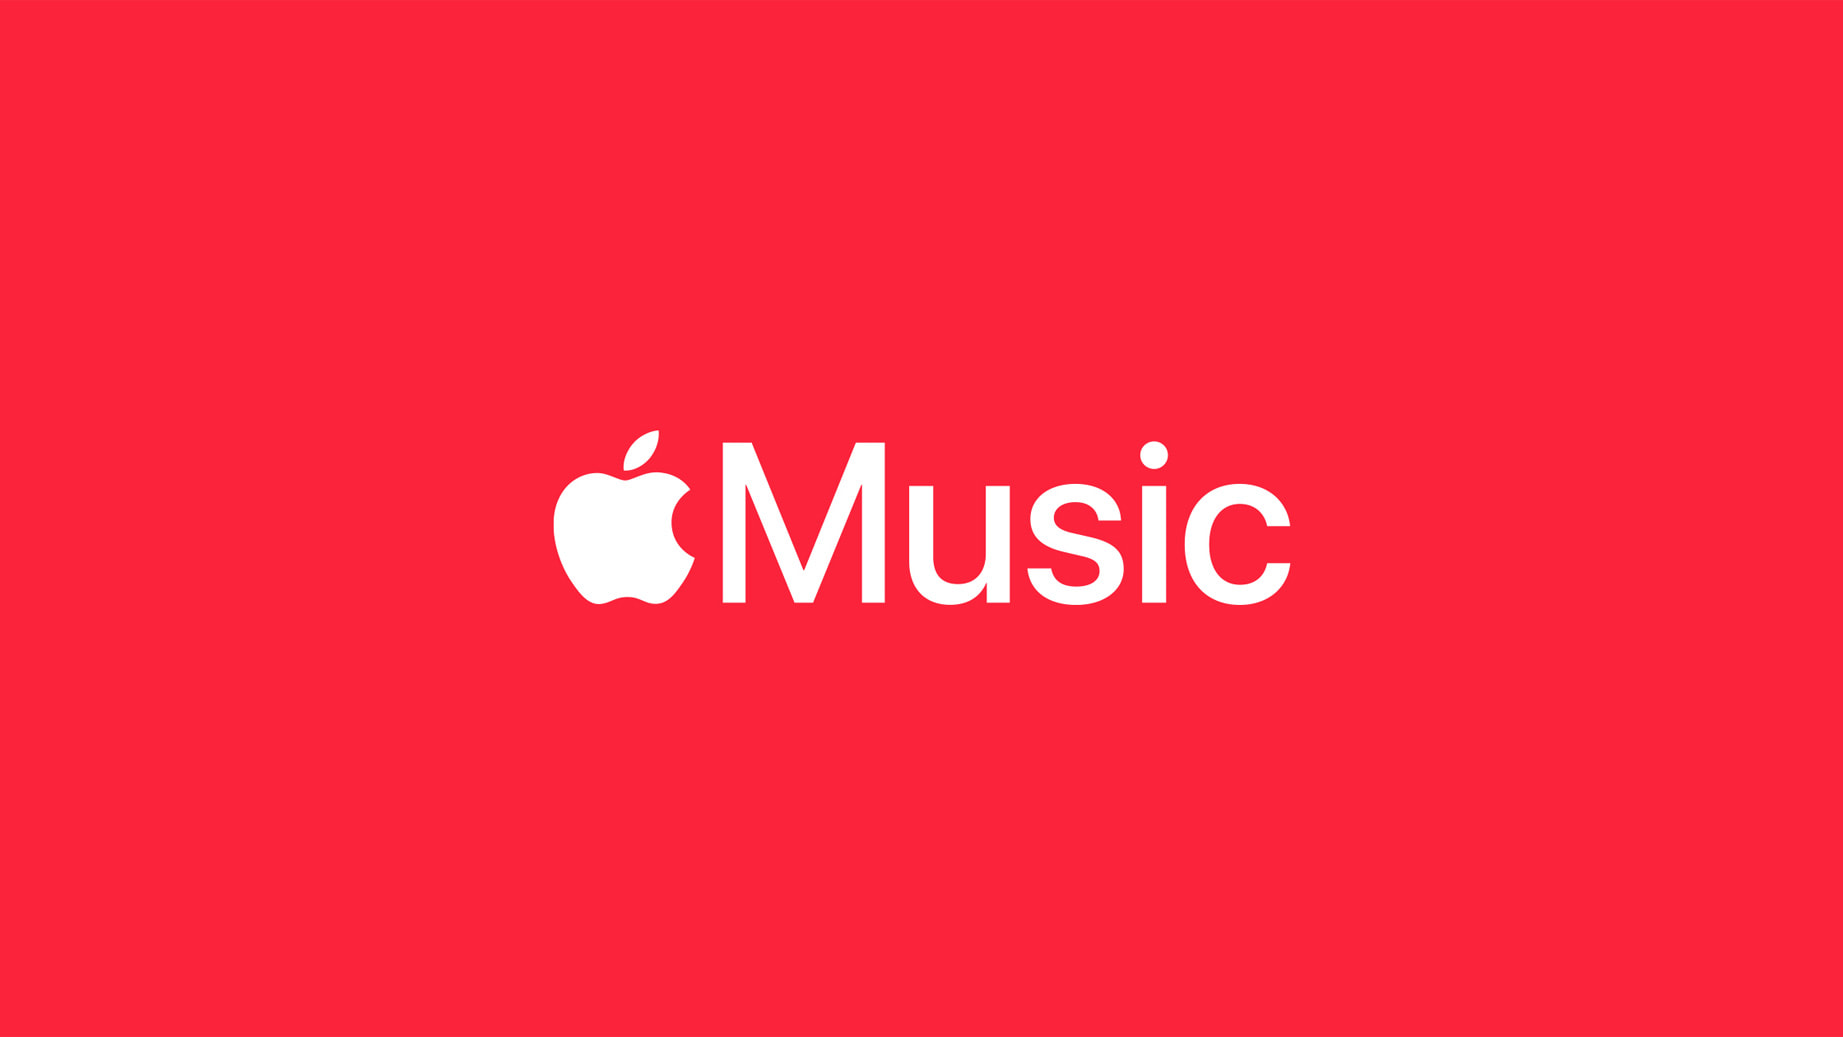 Apple Music ลดช่วงทดลองฟรีจาก 3 เดือนเหลือ 1 เดือน